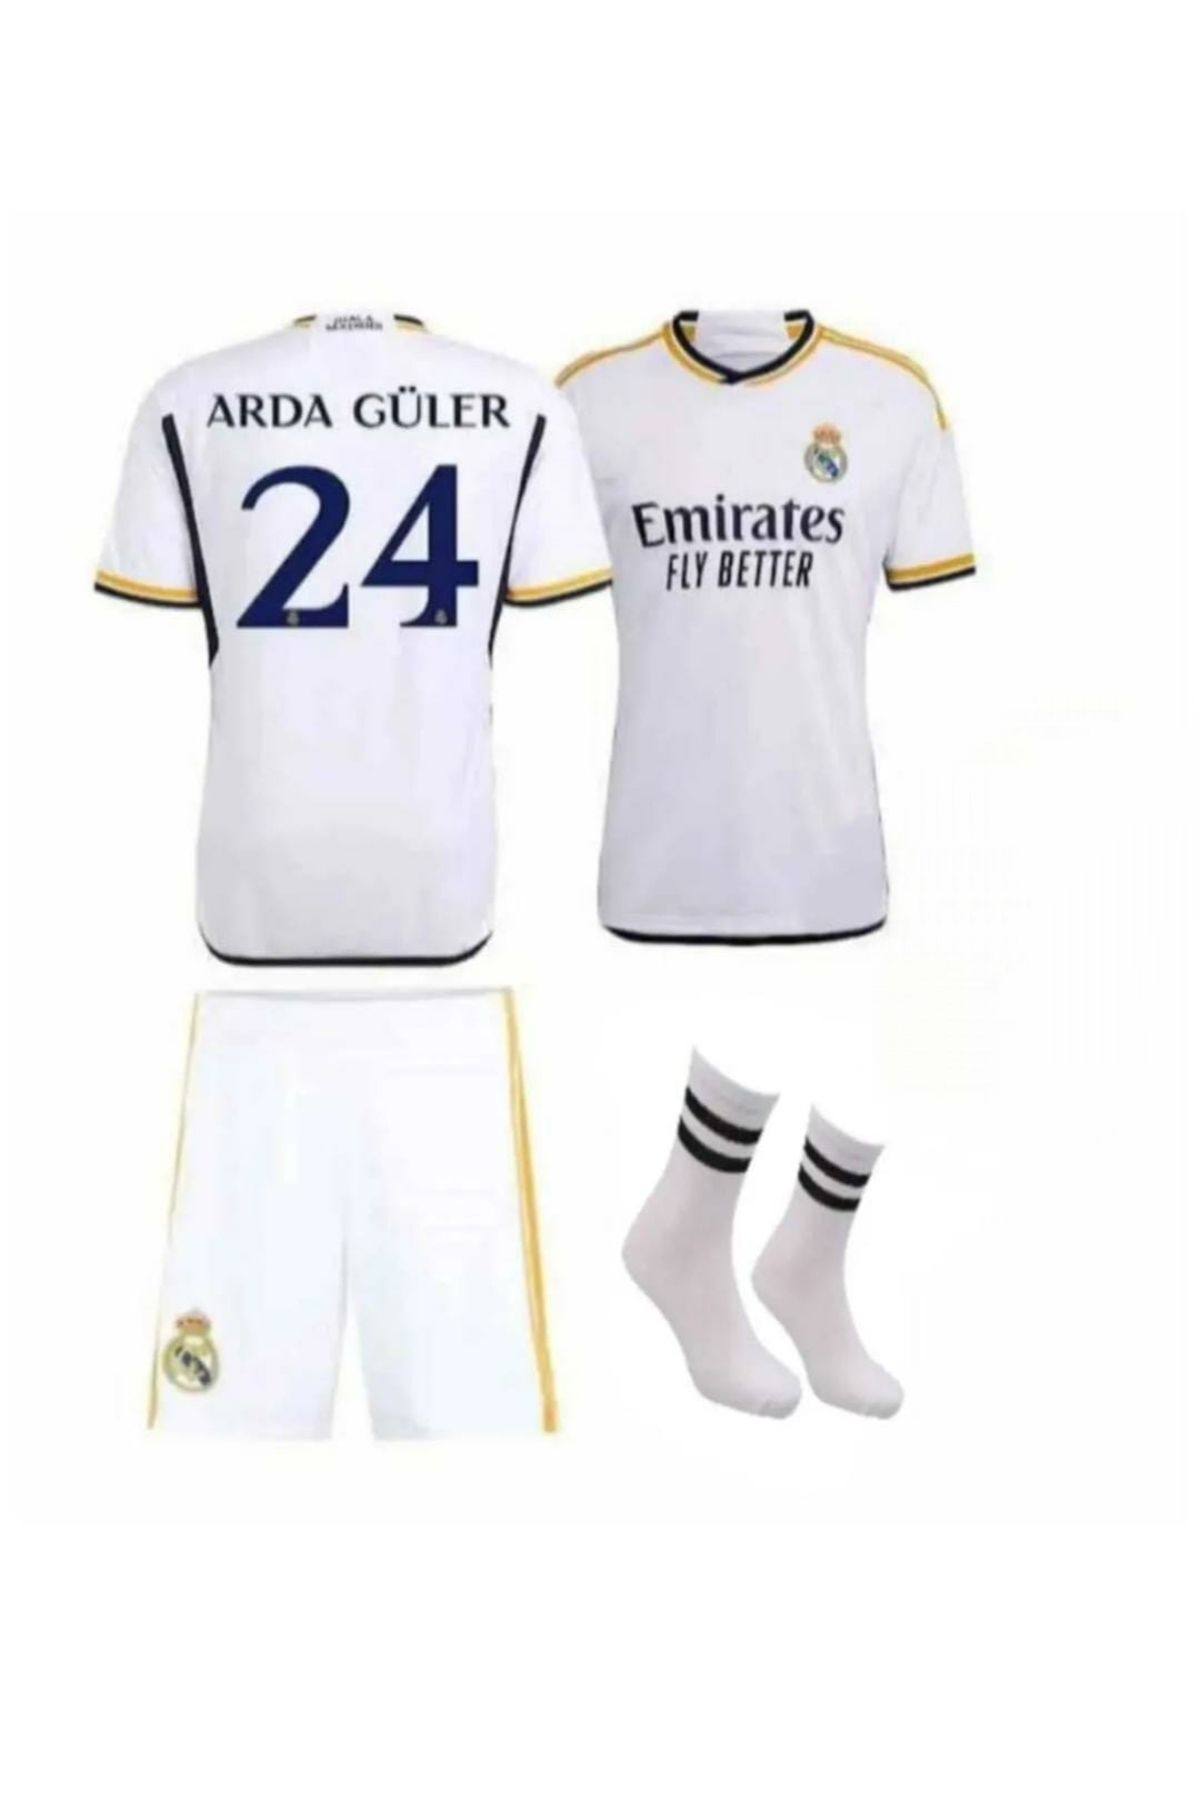 BYSPORTAKUS Real Madrid 2023/24 Yeni Sezon Arda Güler Çocuk Forması Şort Çorap 3'lü Set